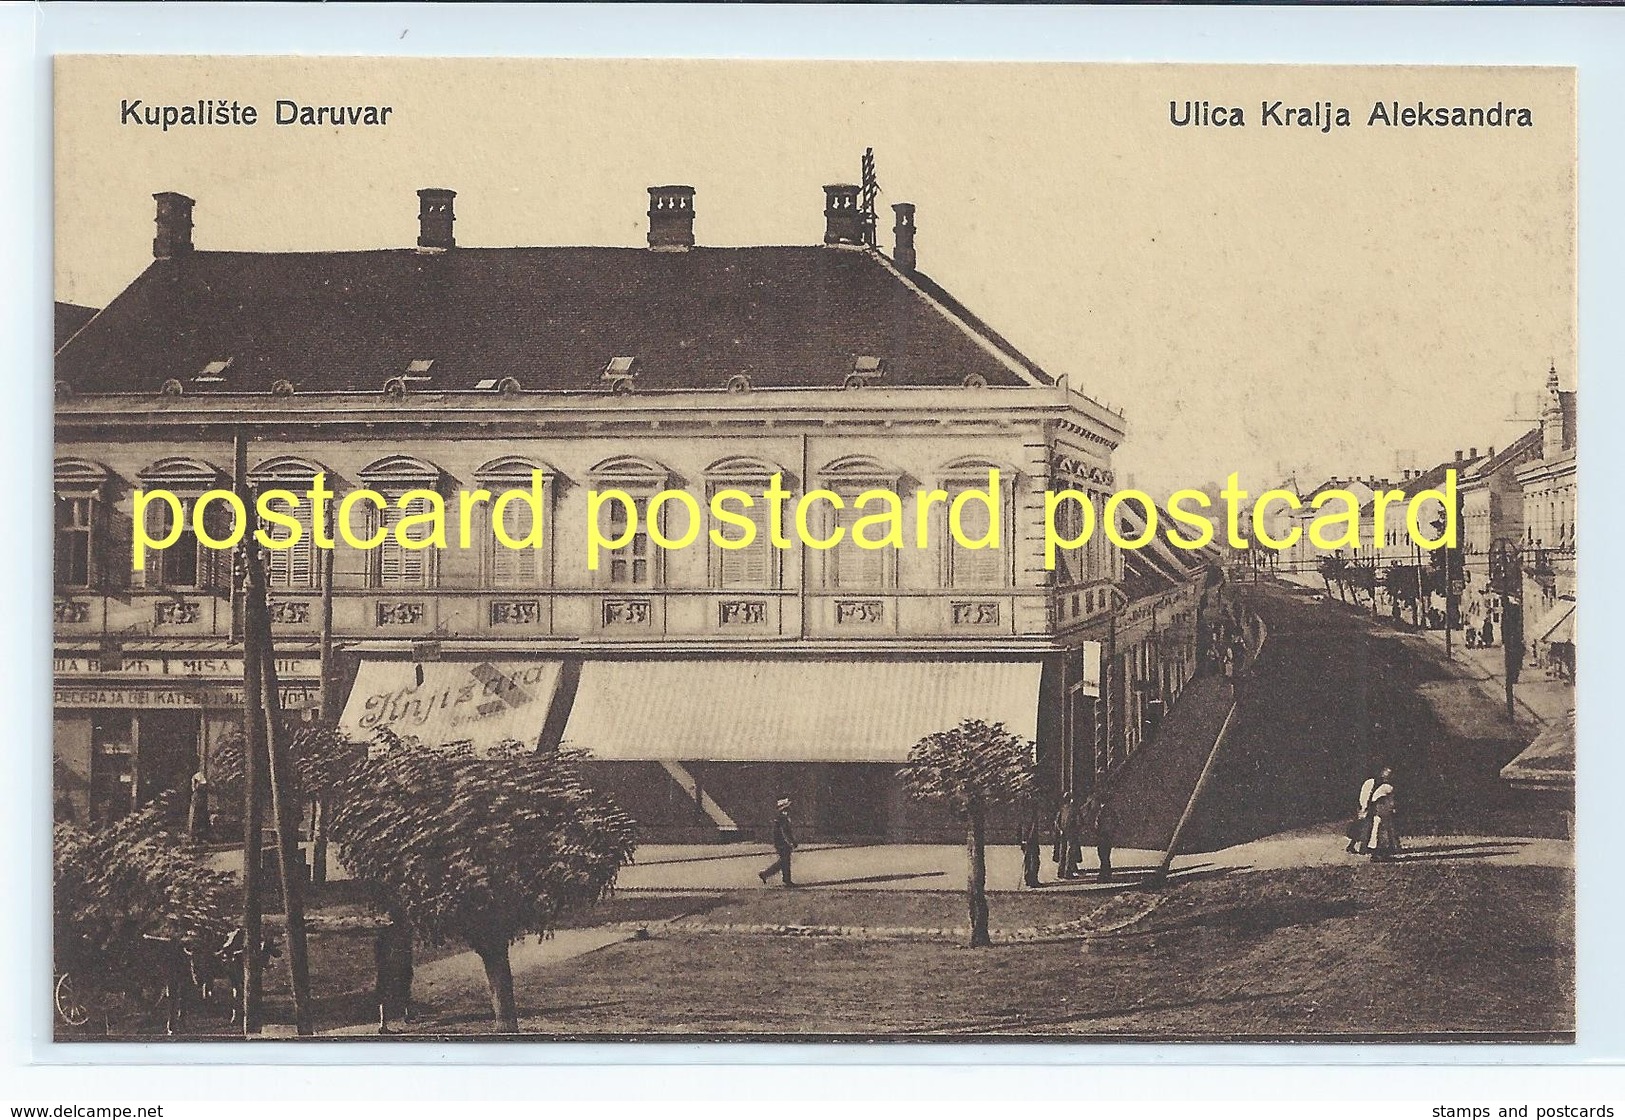 KUPALISTE DARUVAR, CROATIA - ULICA KRALJA ALEKSANDRA. OLD POSTCARD C.1910 #684. - Croatia